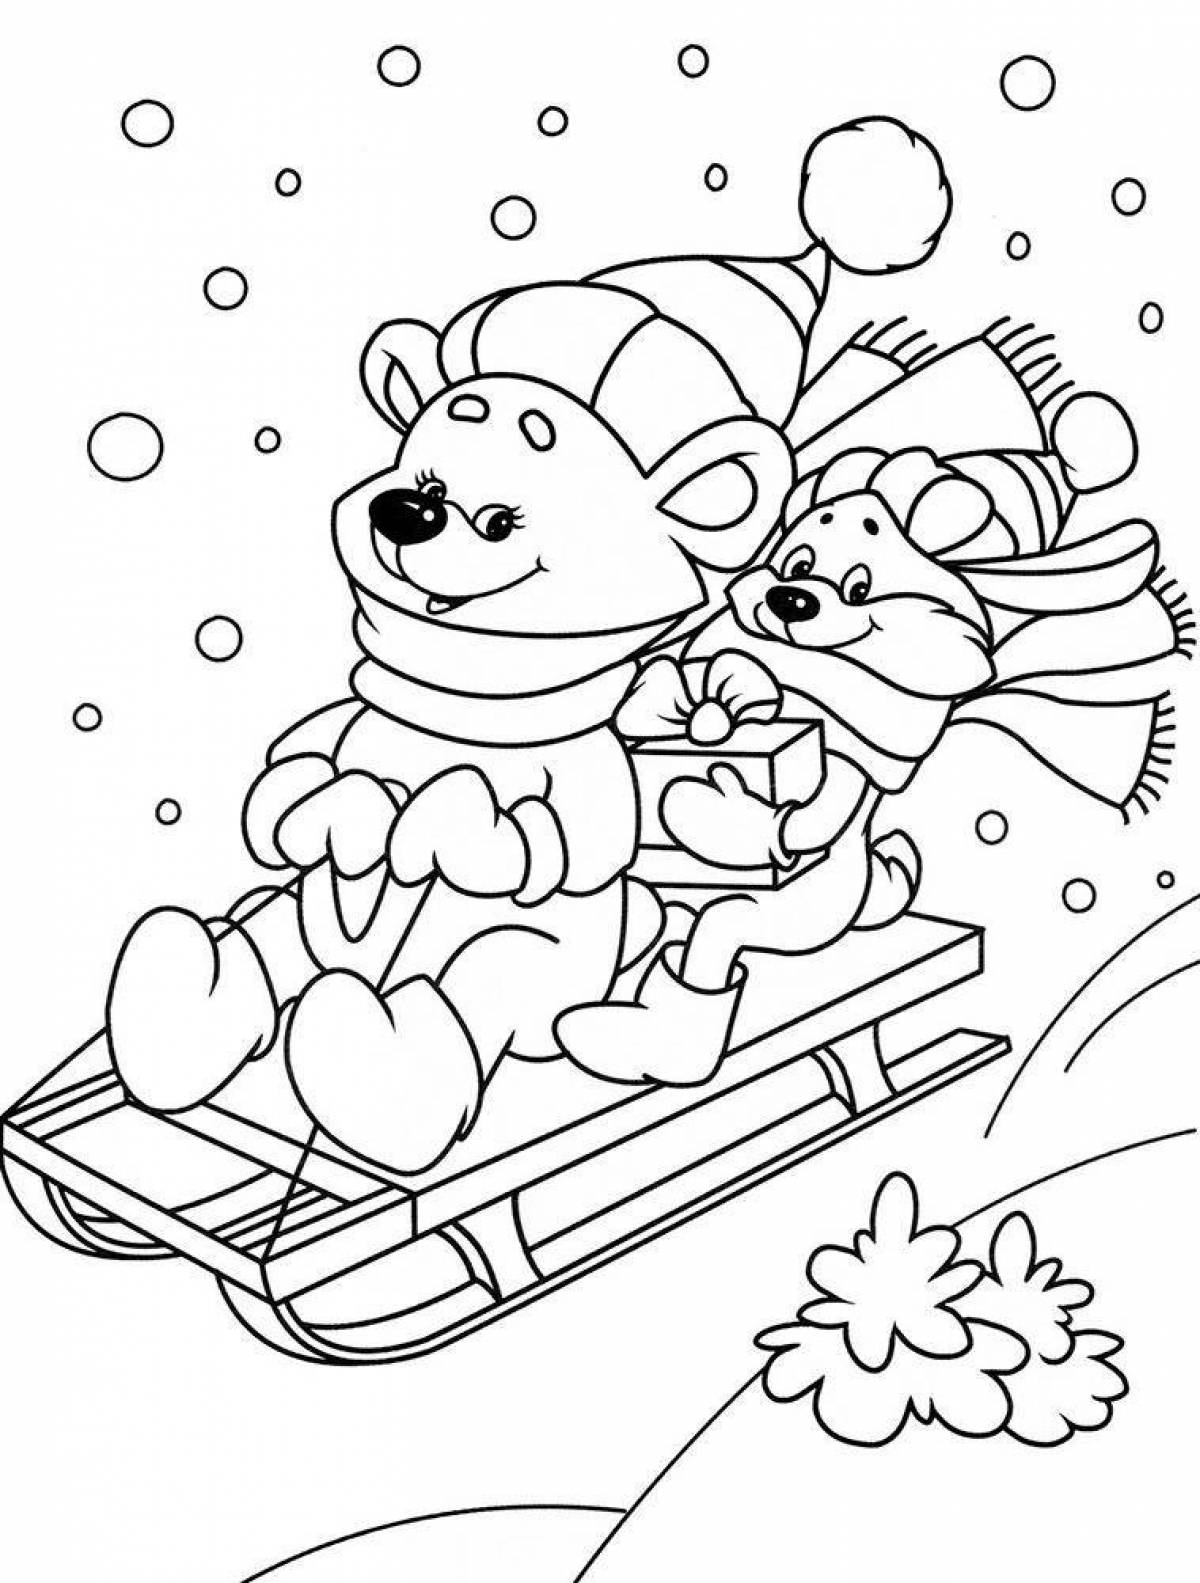 Веселая зимняя раскраска для детей 4-6 лет